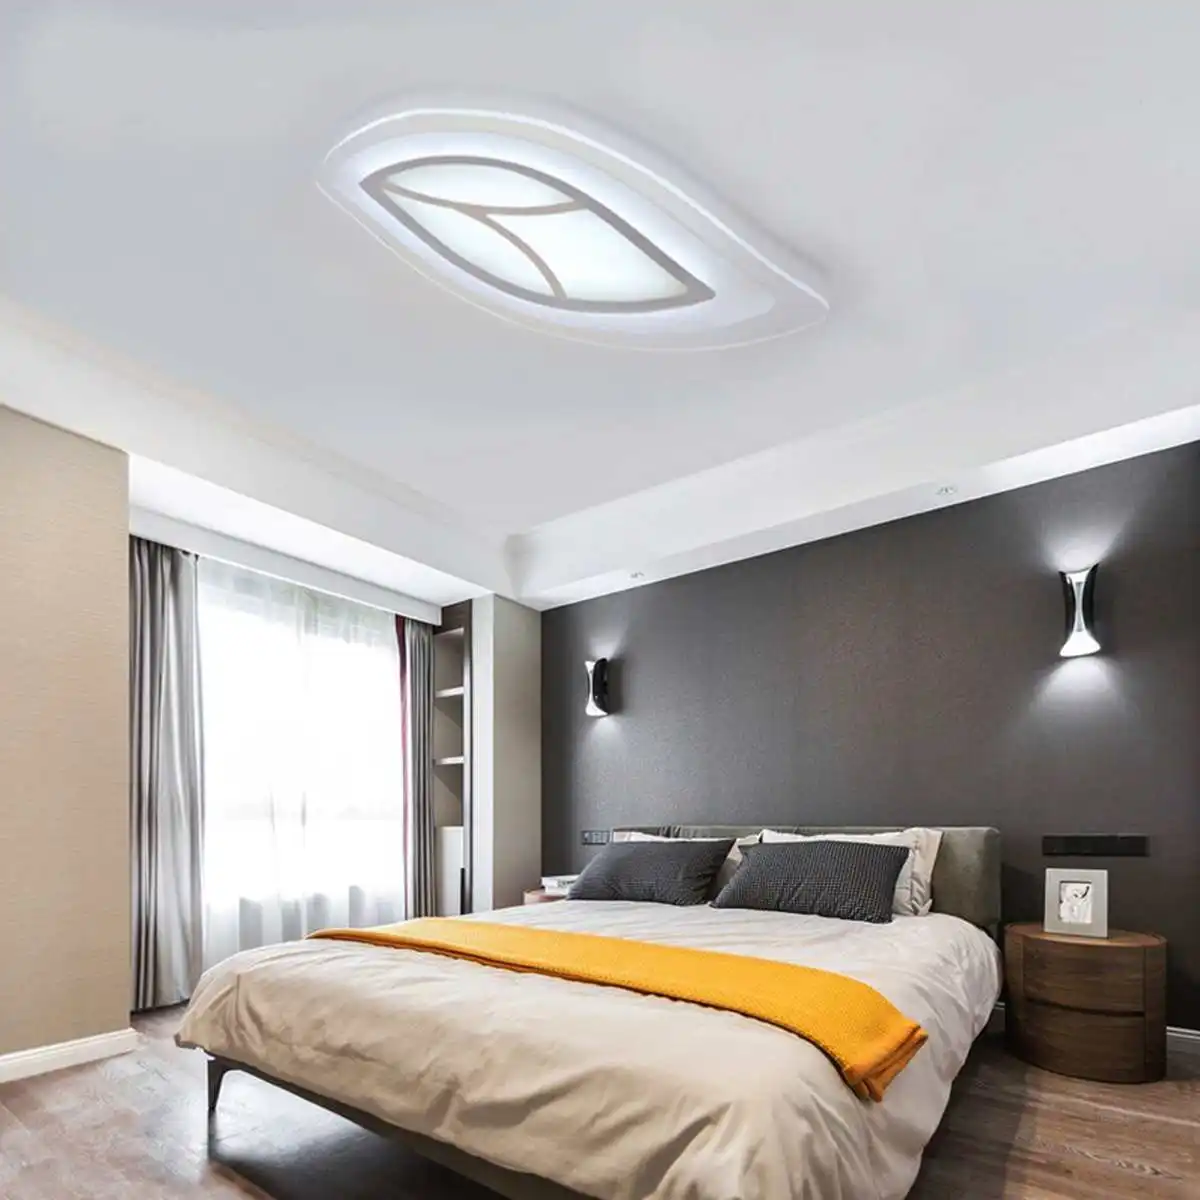 15 Вт 220 В Акриловый светодиодный потолочный светильник для спальни, потолочные светильники, поверхностного монтажа, внутреннее освещение, домашнее украшение, 20X15 см